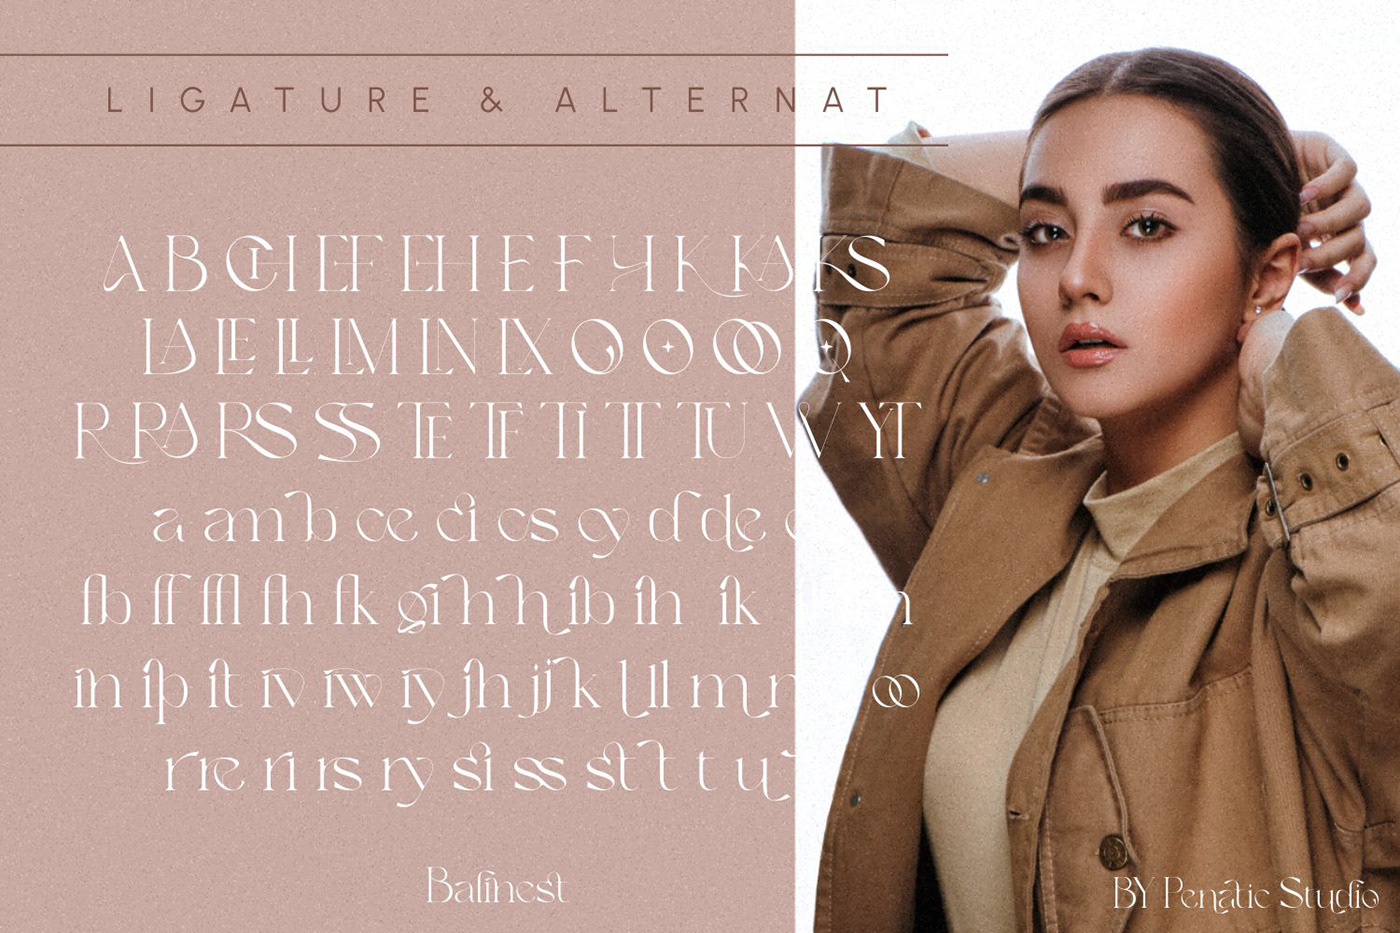 alternates Classic elegant Fashion  font Ligatures luxury modern Serif Font Typeface